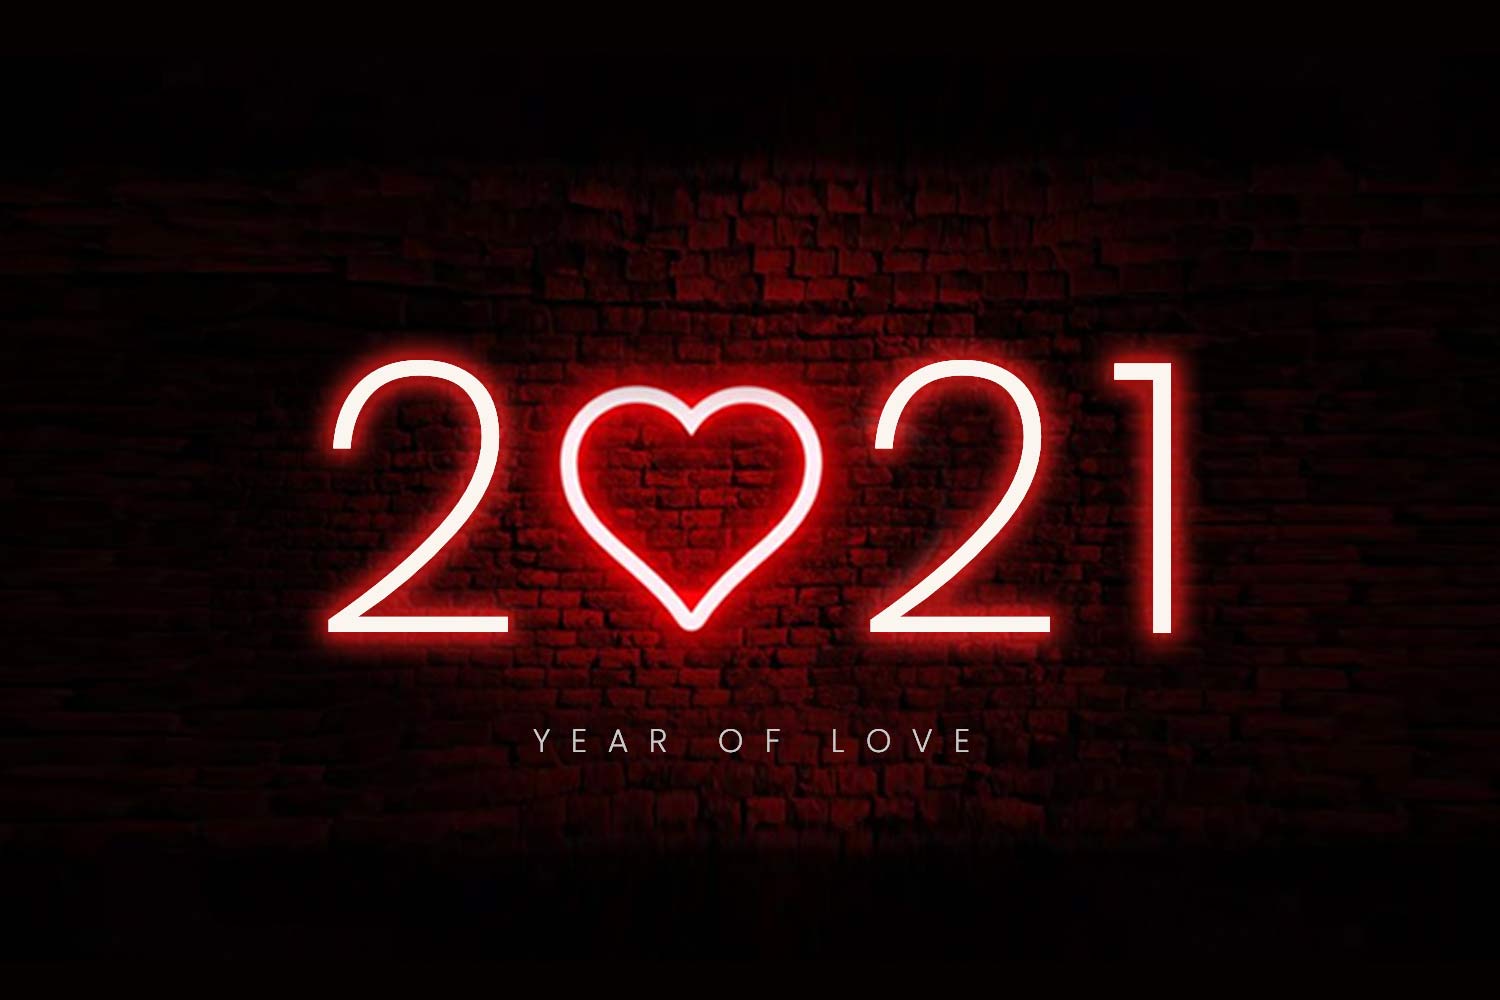 2021 Year of Love Achyuta Samanta Blog